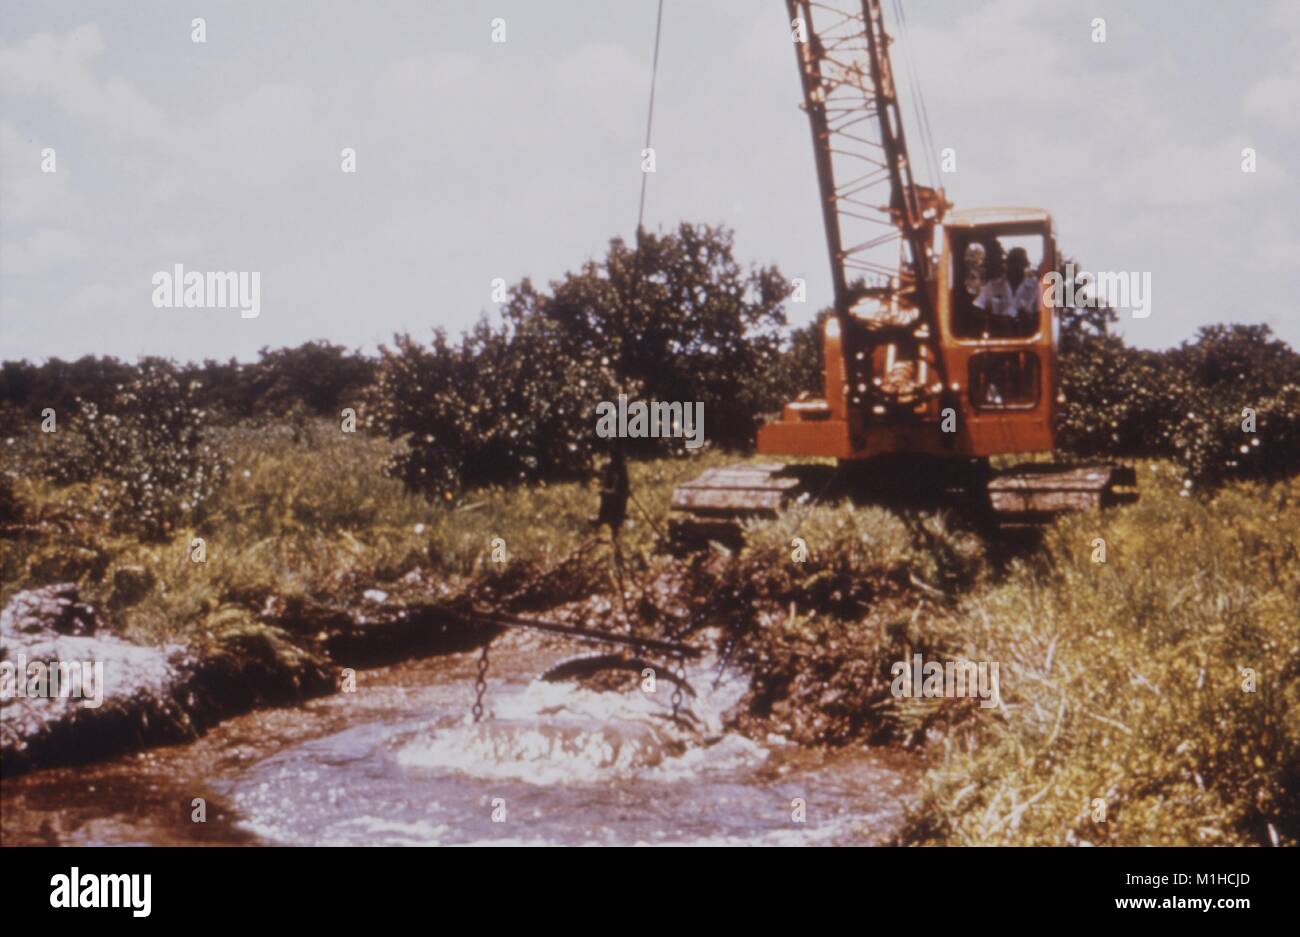 Fotografia di una pulizia dragline detriti da una piscina di acqua accumulata in un canale di drenaggio in mezzo alla vegetazione, garantendo il flusso di acqua e controllo di inondazione come un metodo di minimizzazione dei rischi dal vettore di malattie, 1976. Immagine cortesia CDC. () Foto Stock